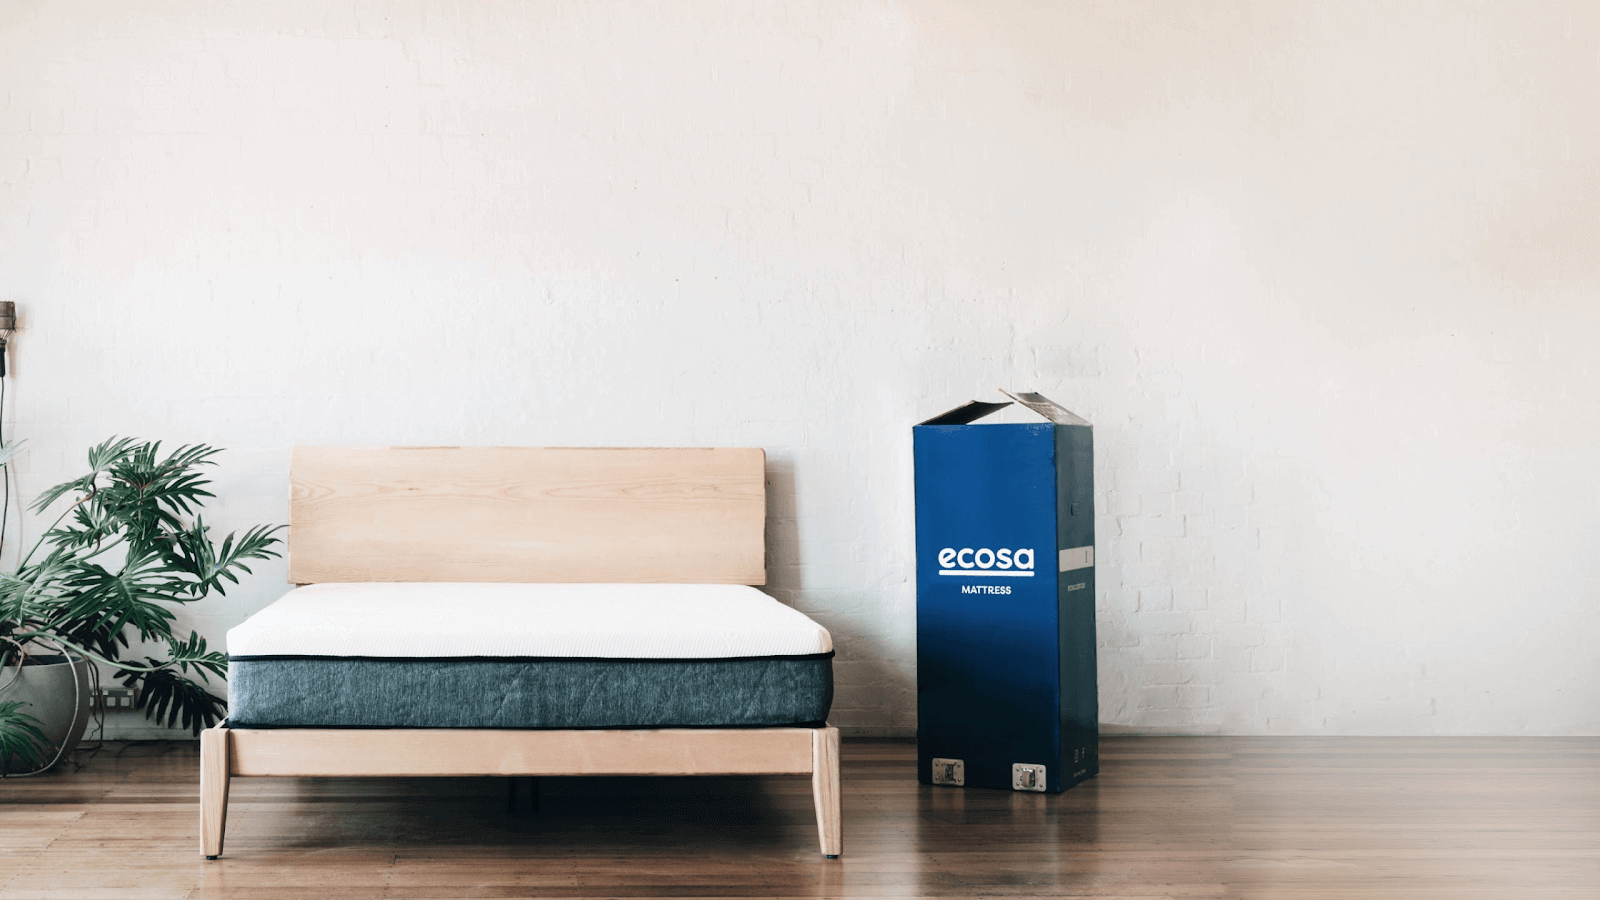 ecosa mattress review forum